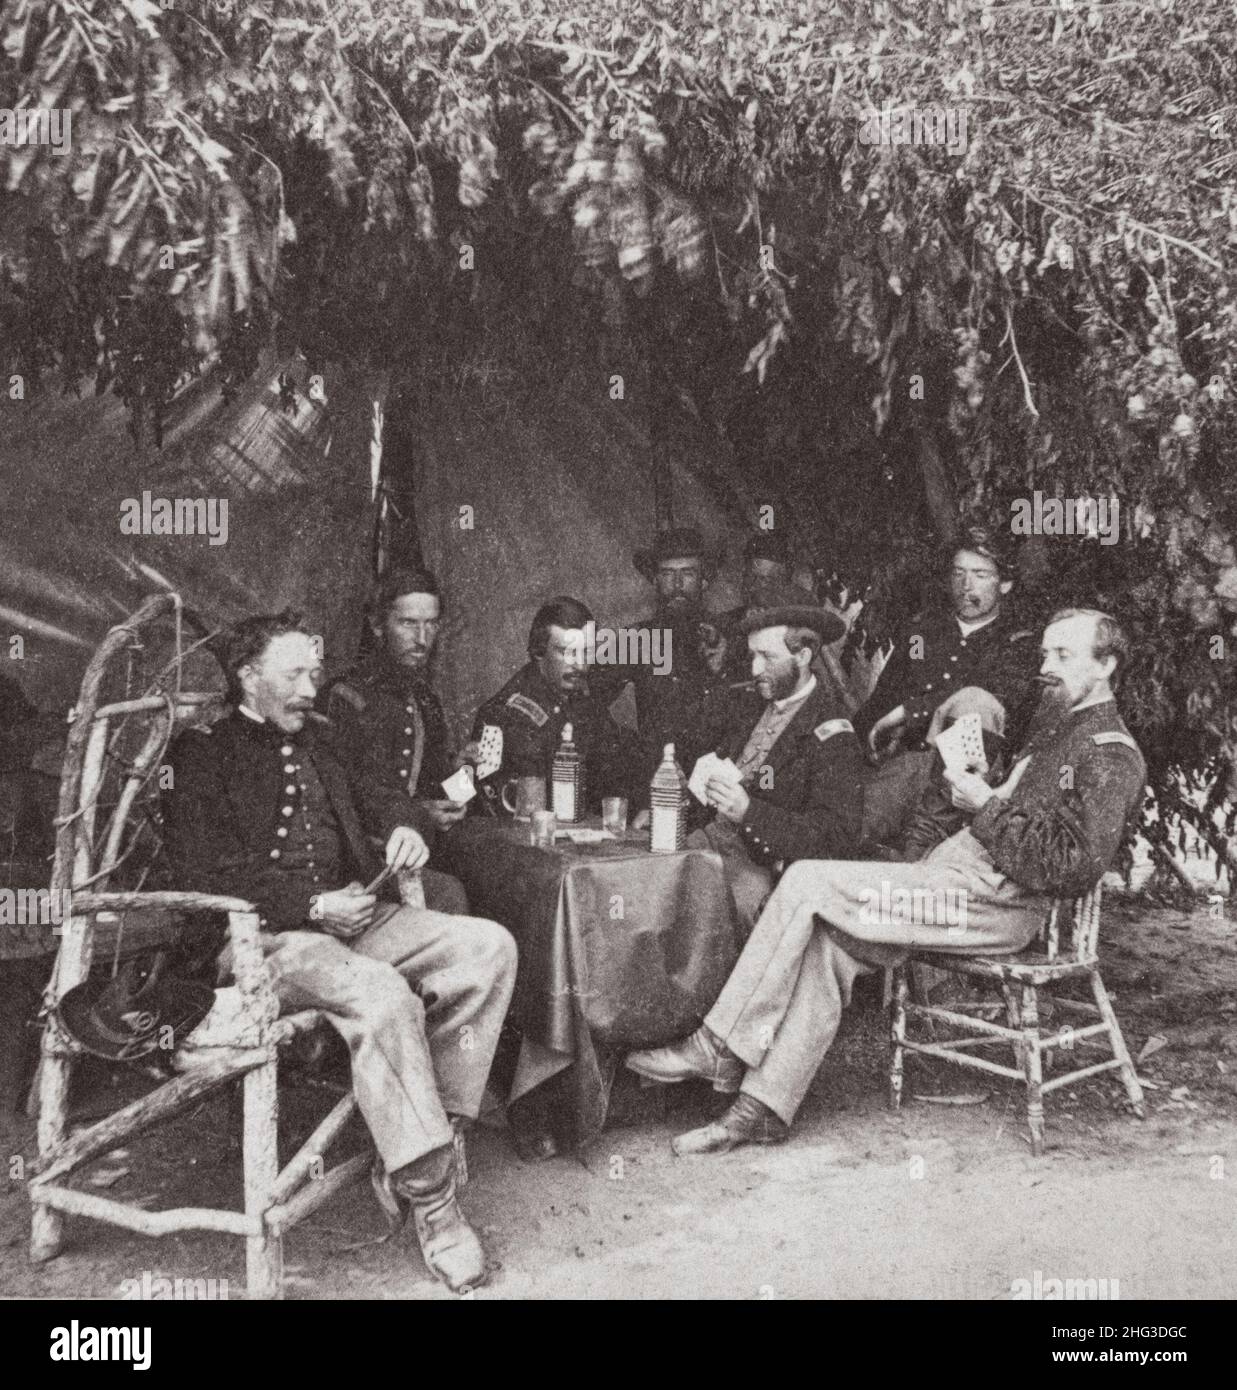 Guerre de Sécession.1861-1865 soldats des 134th Illinois Volunteer Infantry jouant des cartes à Columbus, Kentucky.ÉTATS-UNIS.1864 Banque D'Images